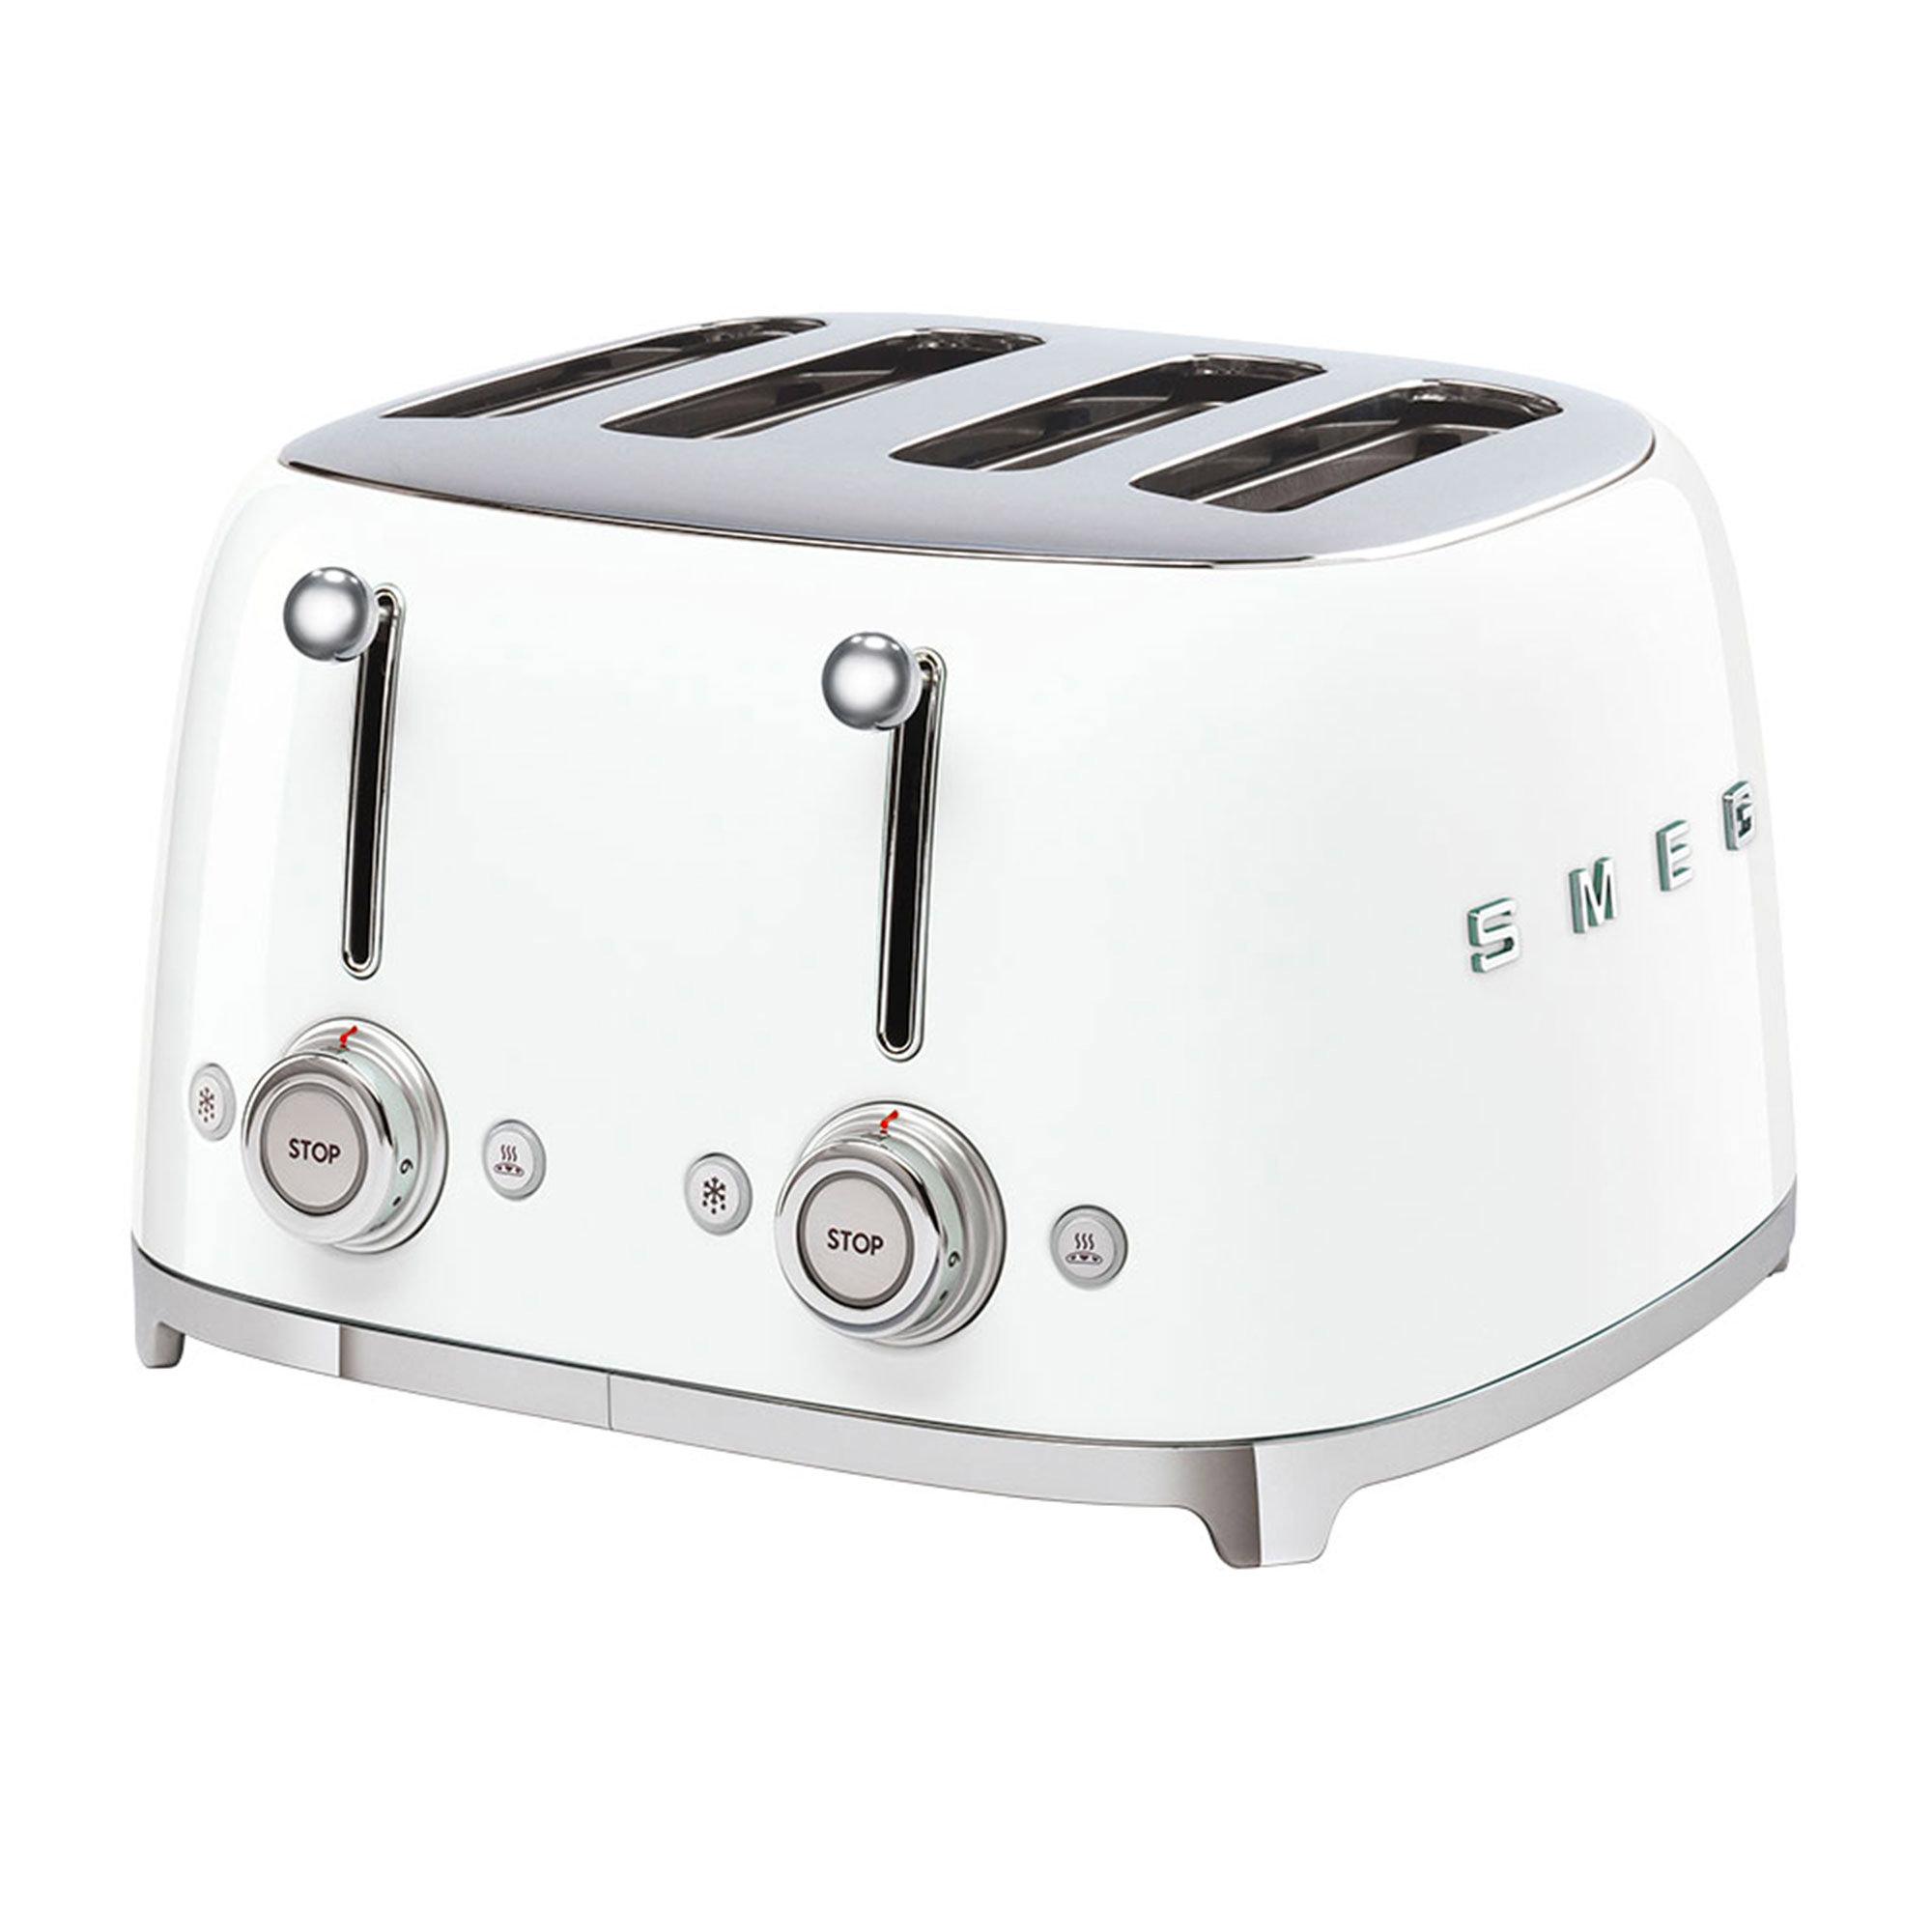 Smeg 50's Retro Style 4 Slot Toaster White Image 1